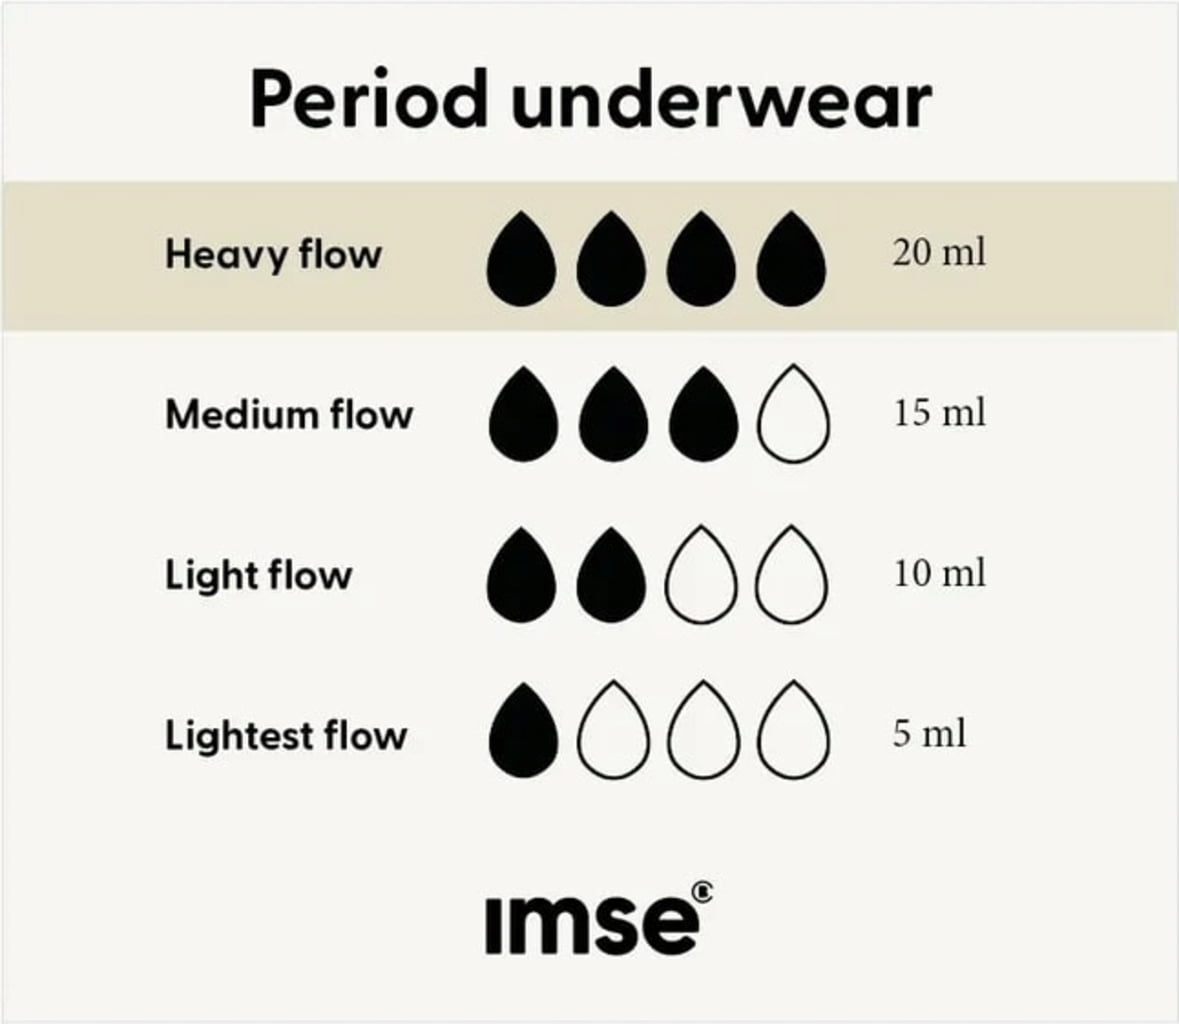 Imse Grey Bikini Period Underwear - Heavy Flow - Ecco Verde Online Shop